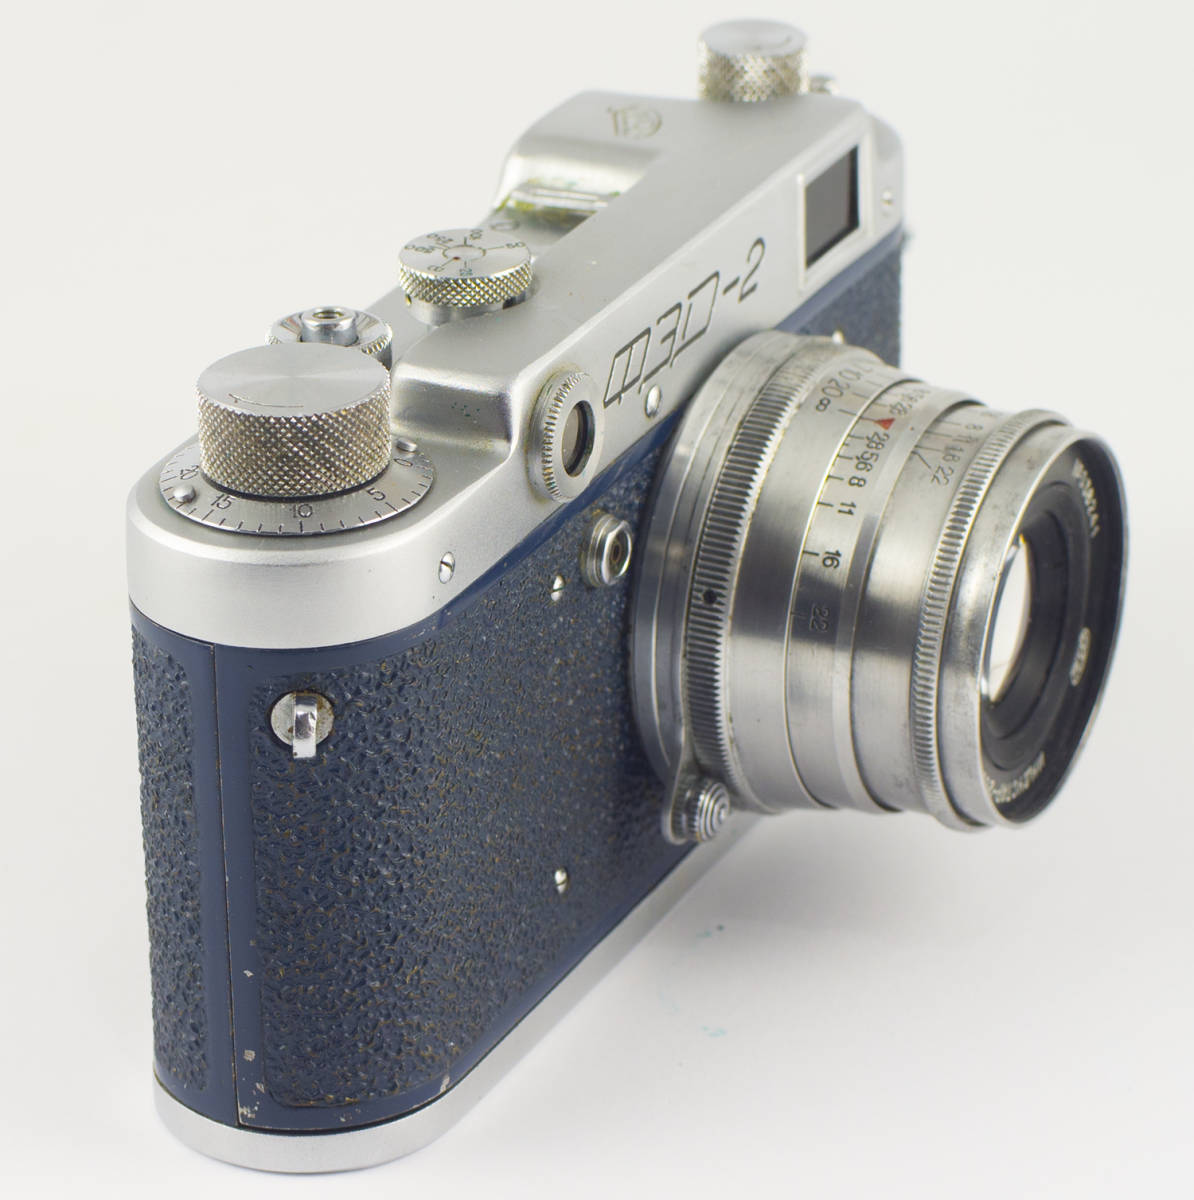 FED 2B 2 B Industar 26m ( F/2.8 50mm ) 体の色が青い ★ ソビエト連邦の距離計カメラ ★ 正常に動作します_画像5